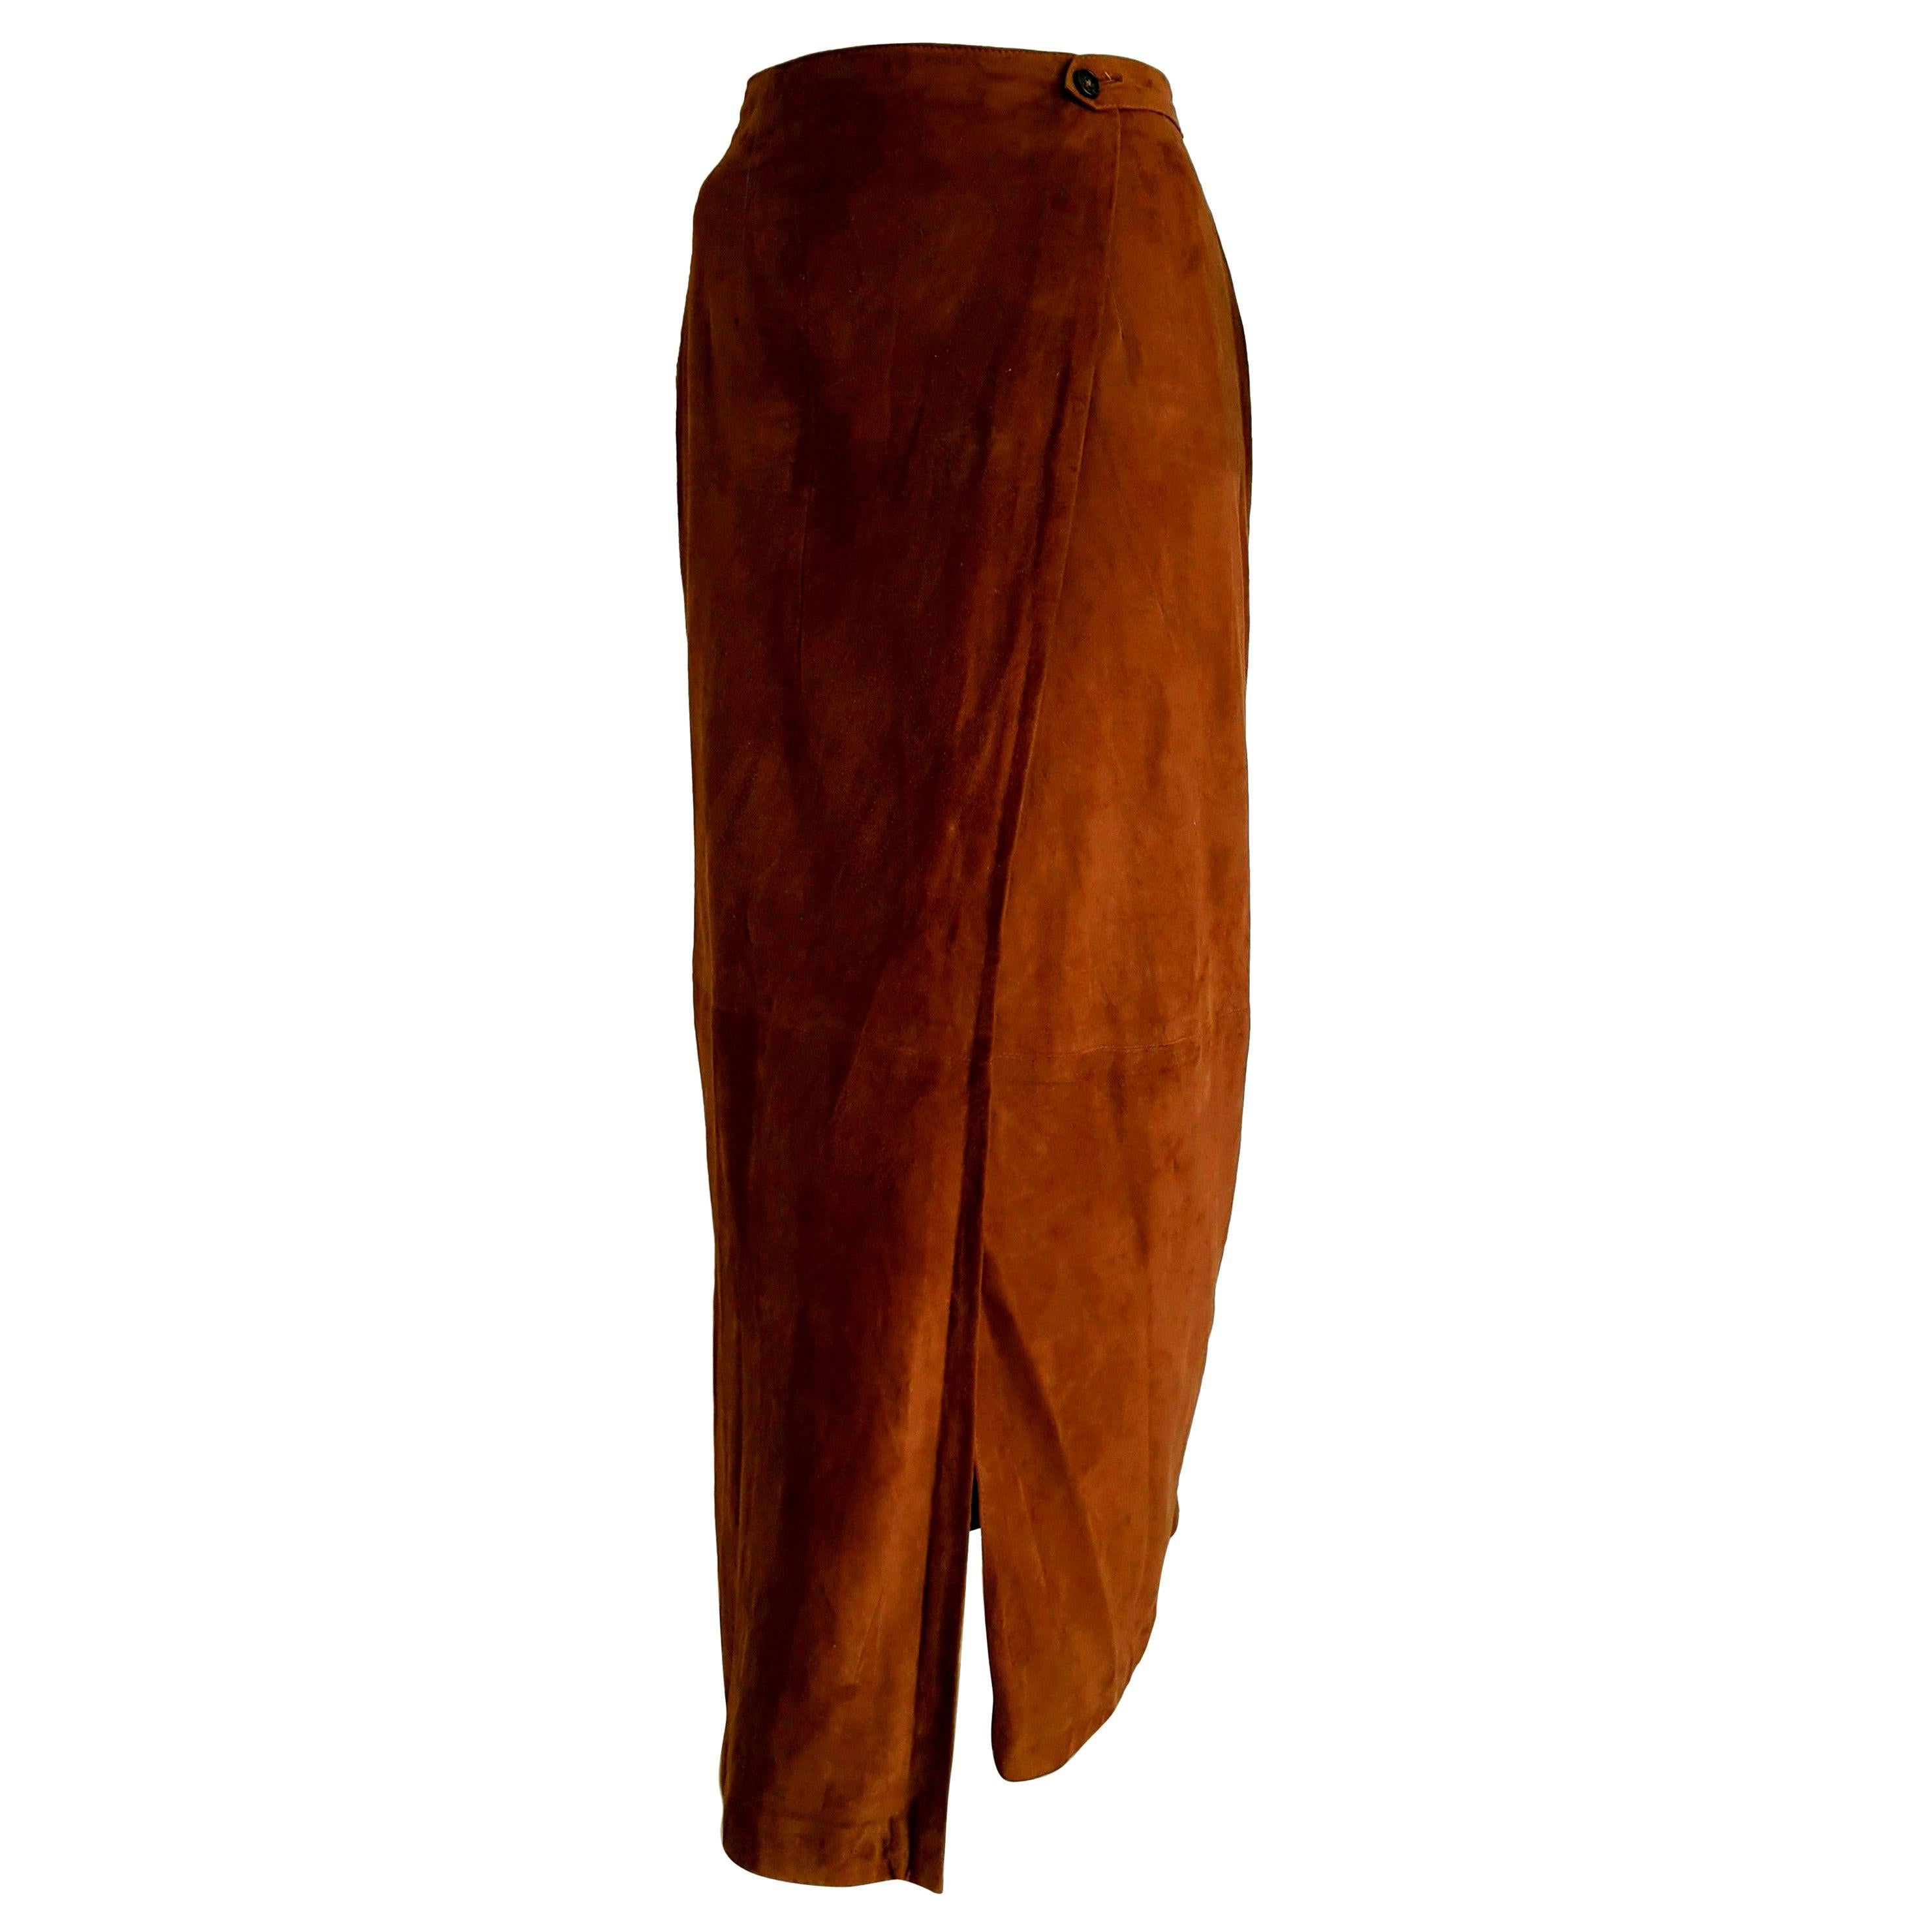 RALPH LAUREN "New" Brown Suede Silk Lined Long Skirt - Unworn For Sale